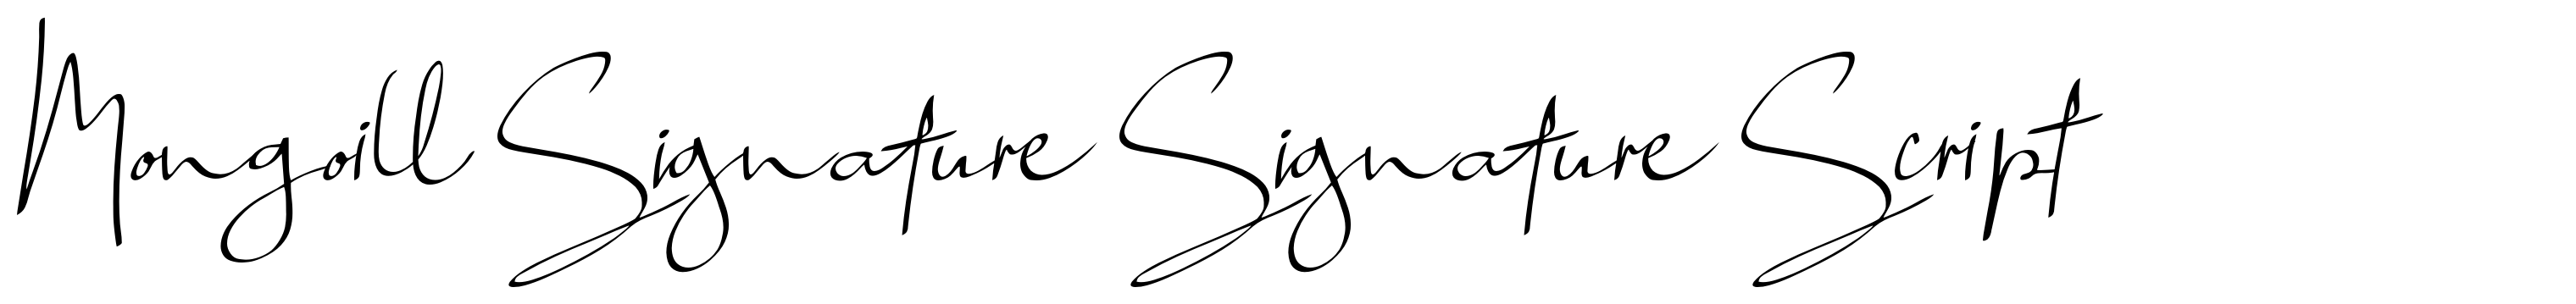 Mongoill Signature Signature Script